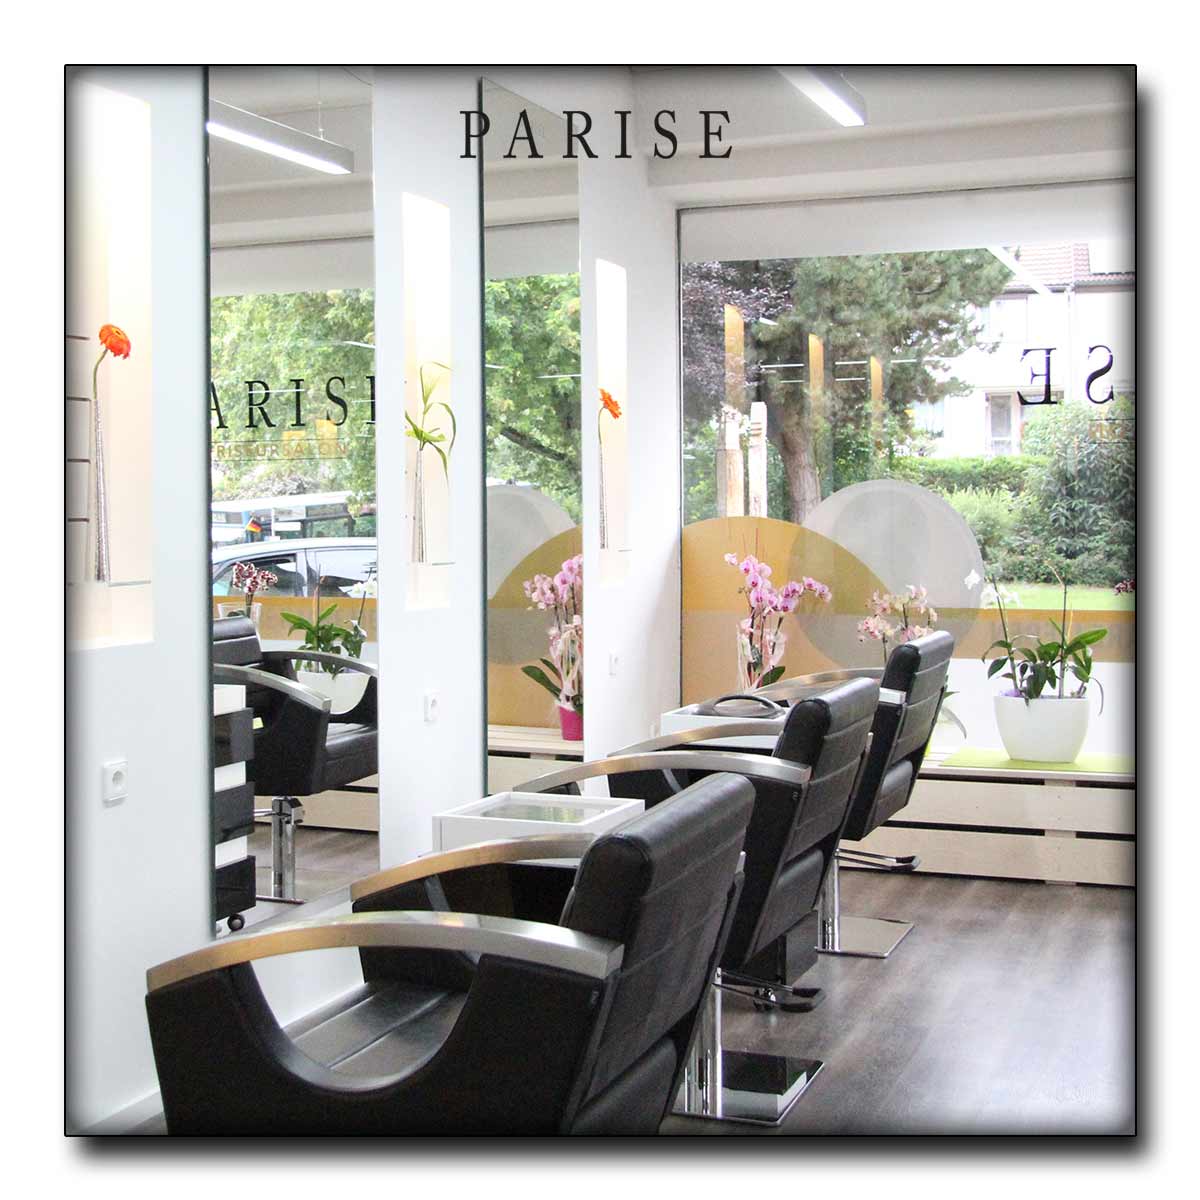 Friseur Salon Parise in Rottweil - Empfang